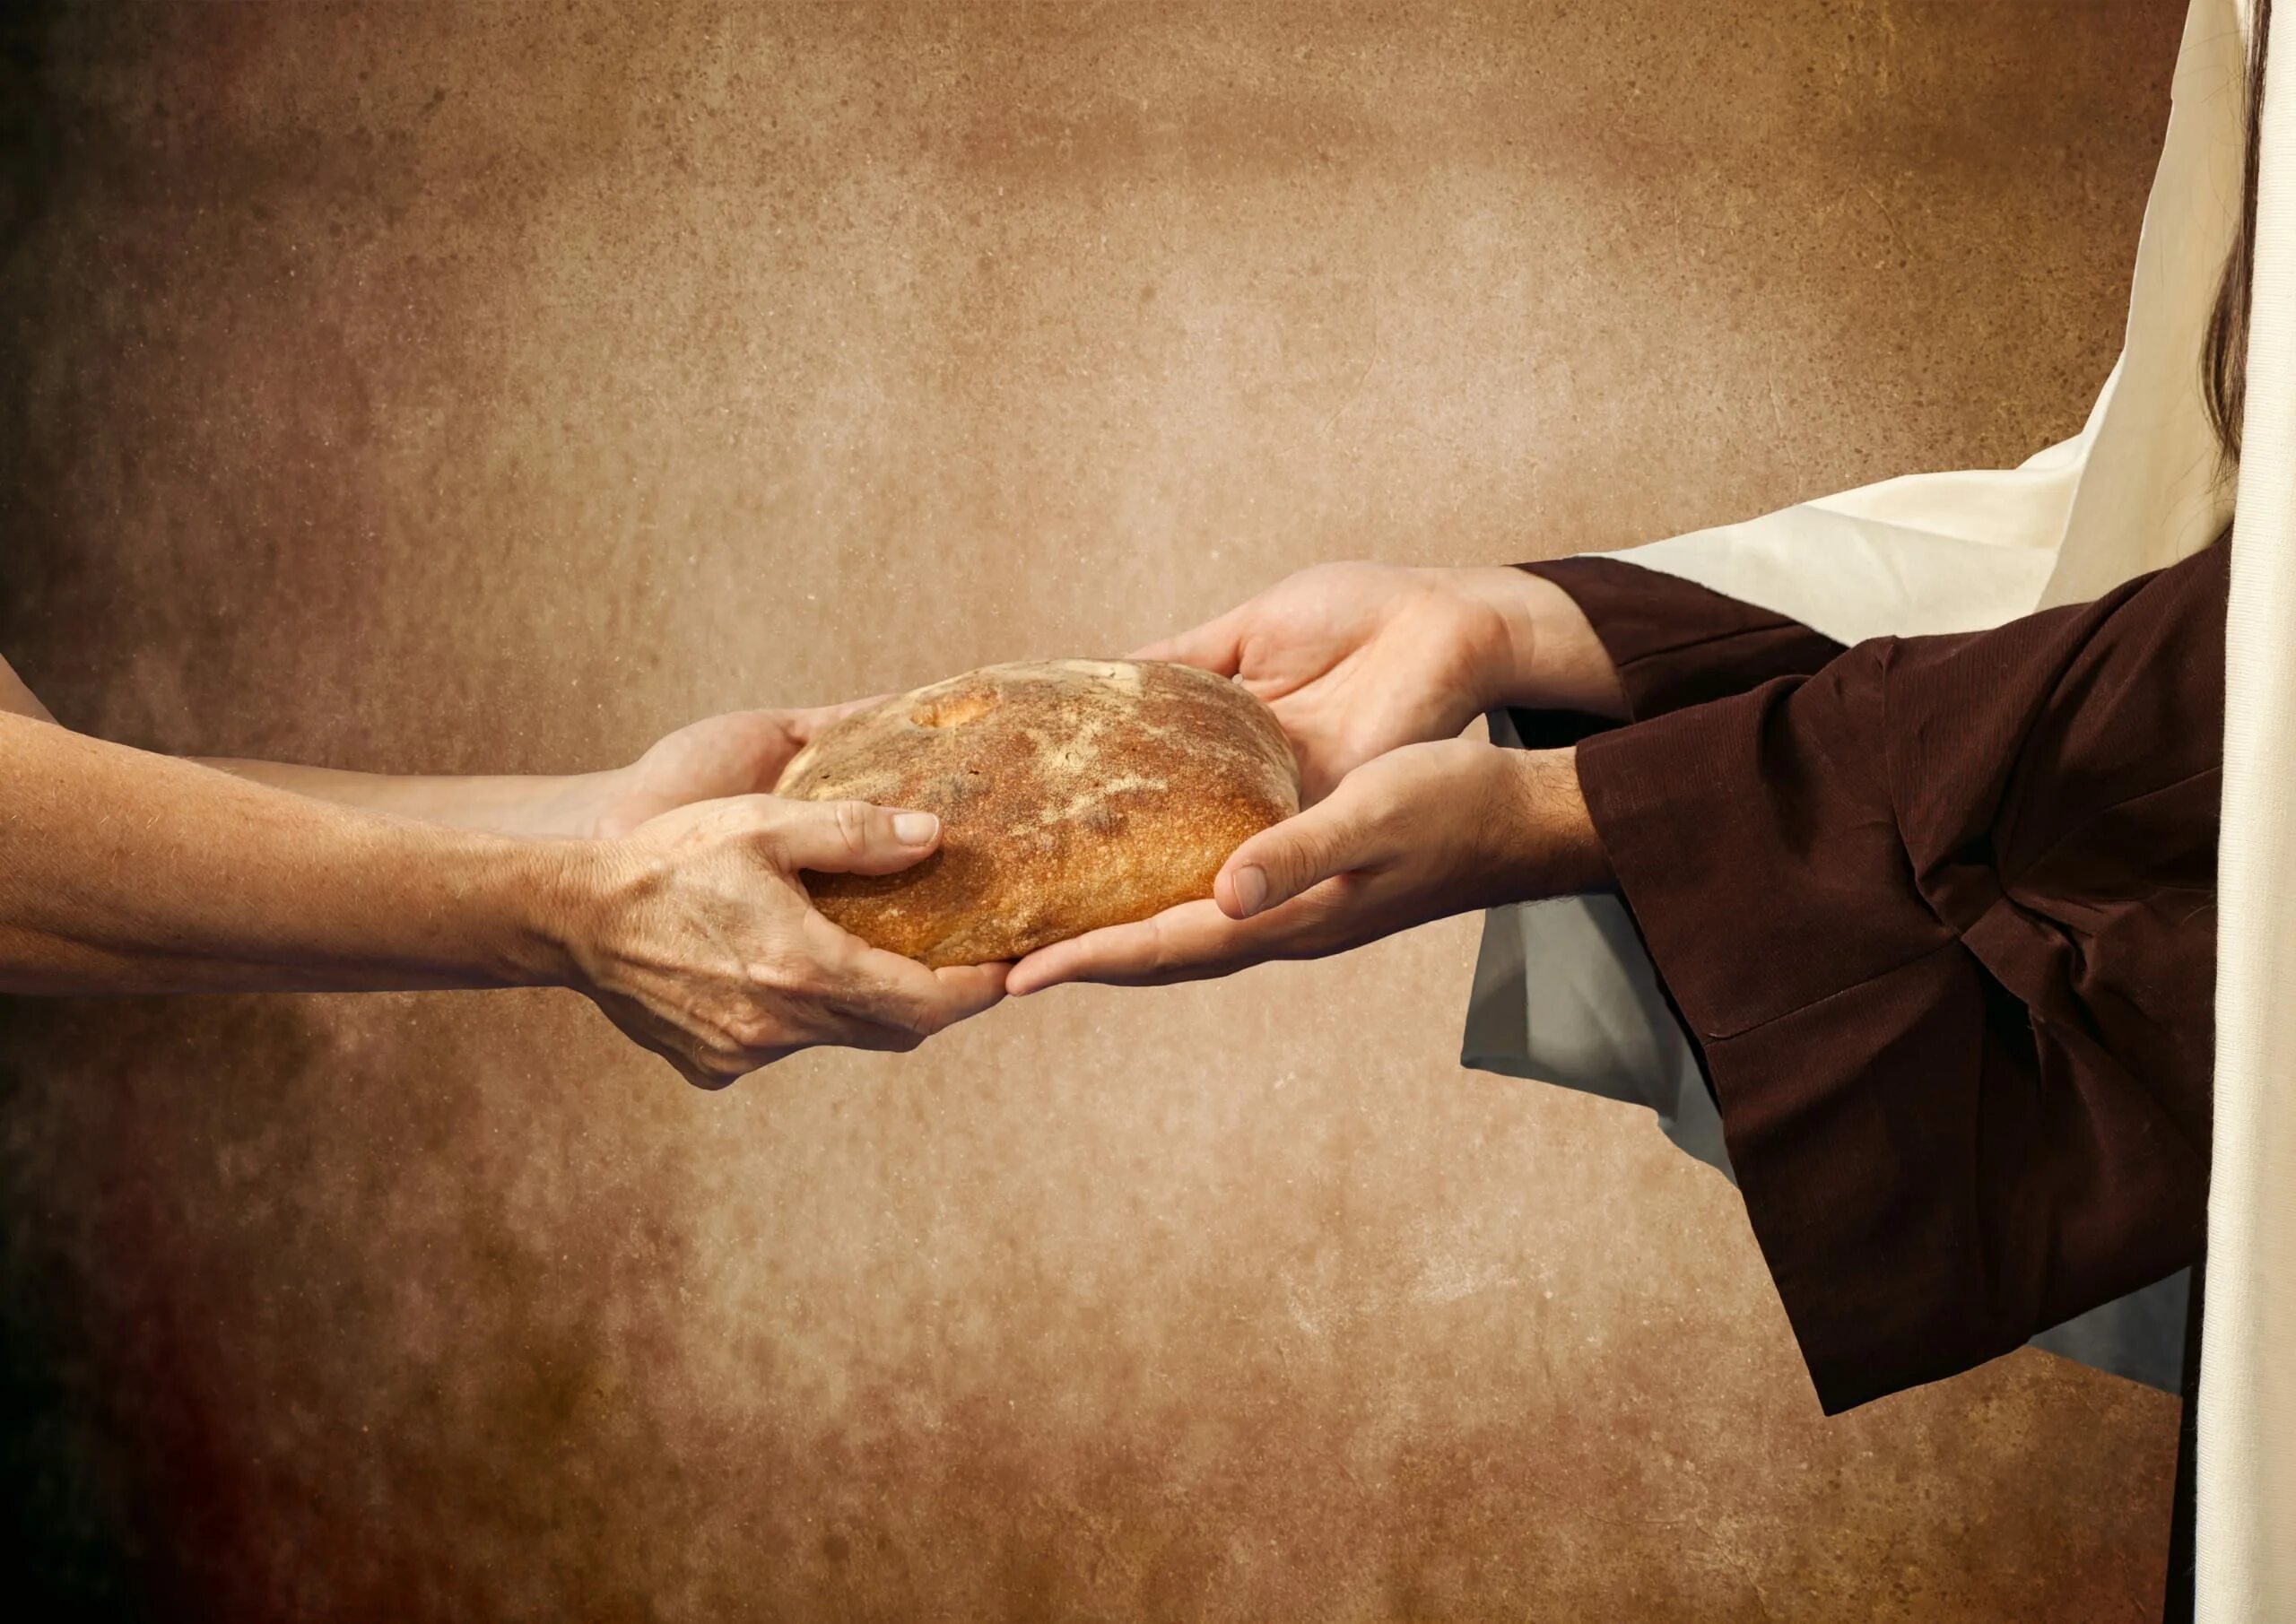 Хлеб в руках. Руки хлебобулочные изделия. Христос и хлеб. Делиться хлебом.